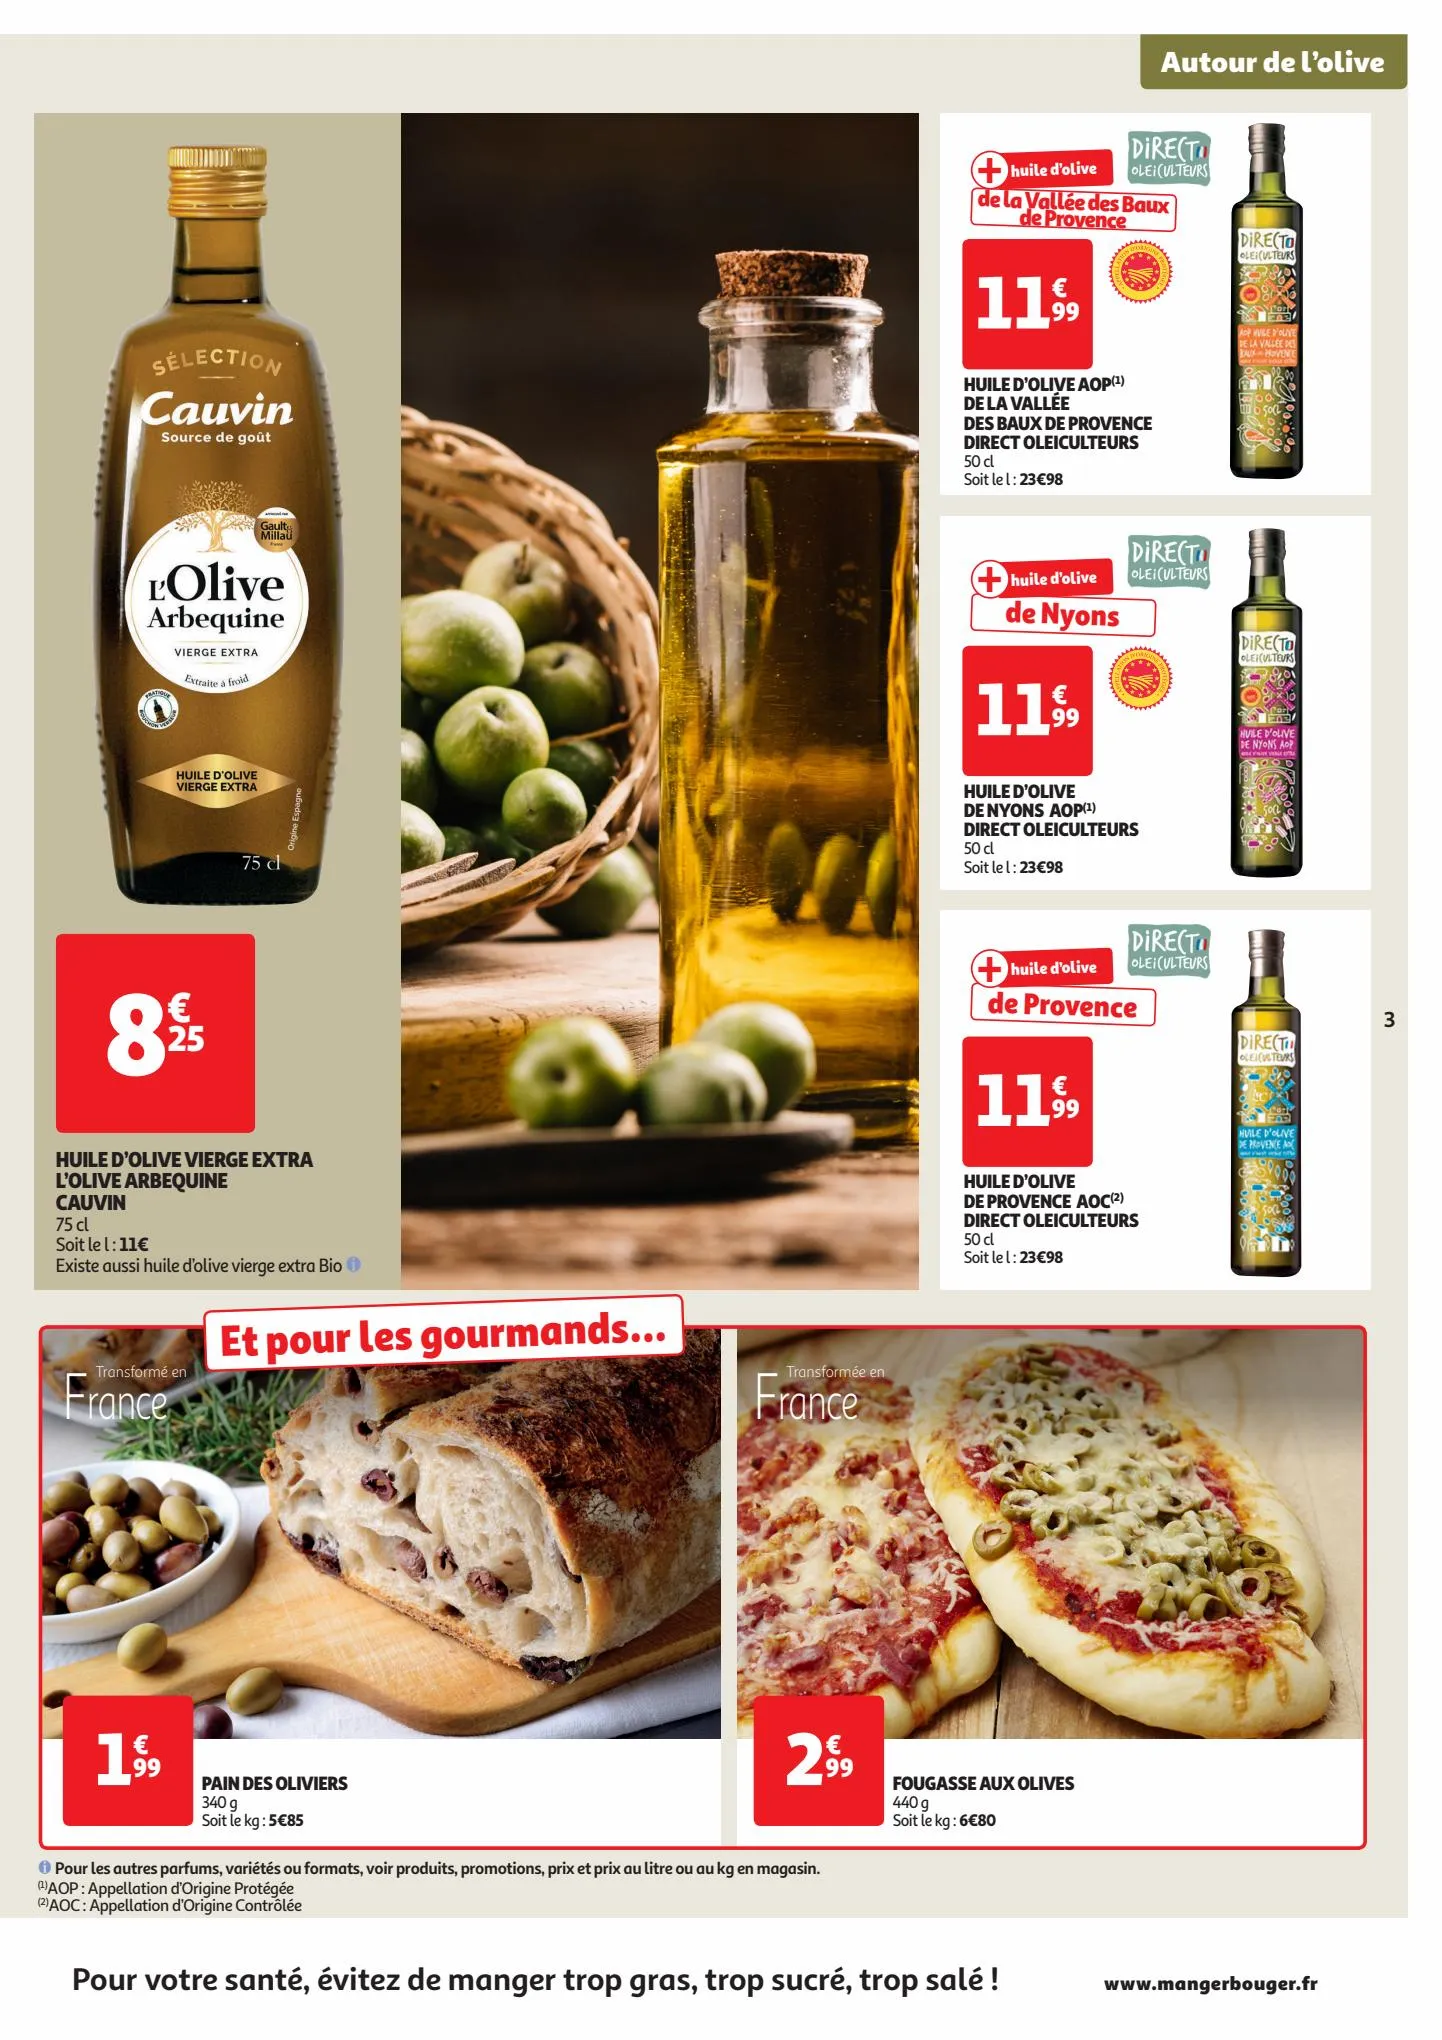 Catalogue Autour de l'olive, page 00003